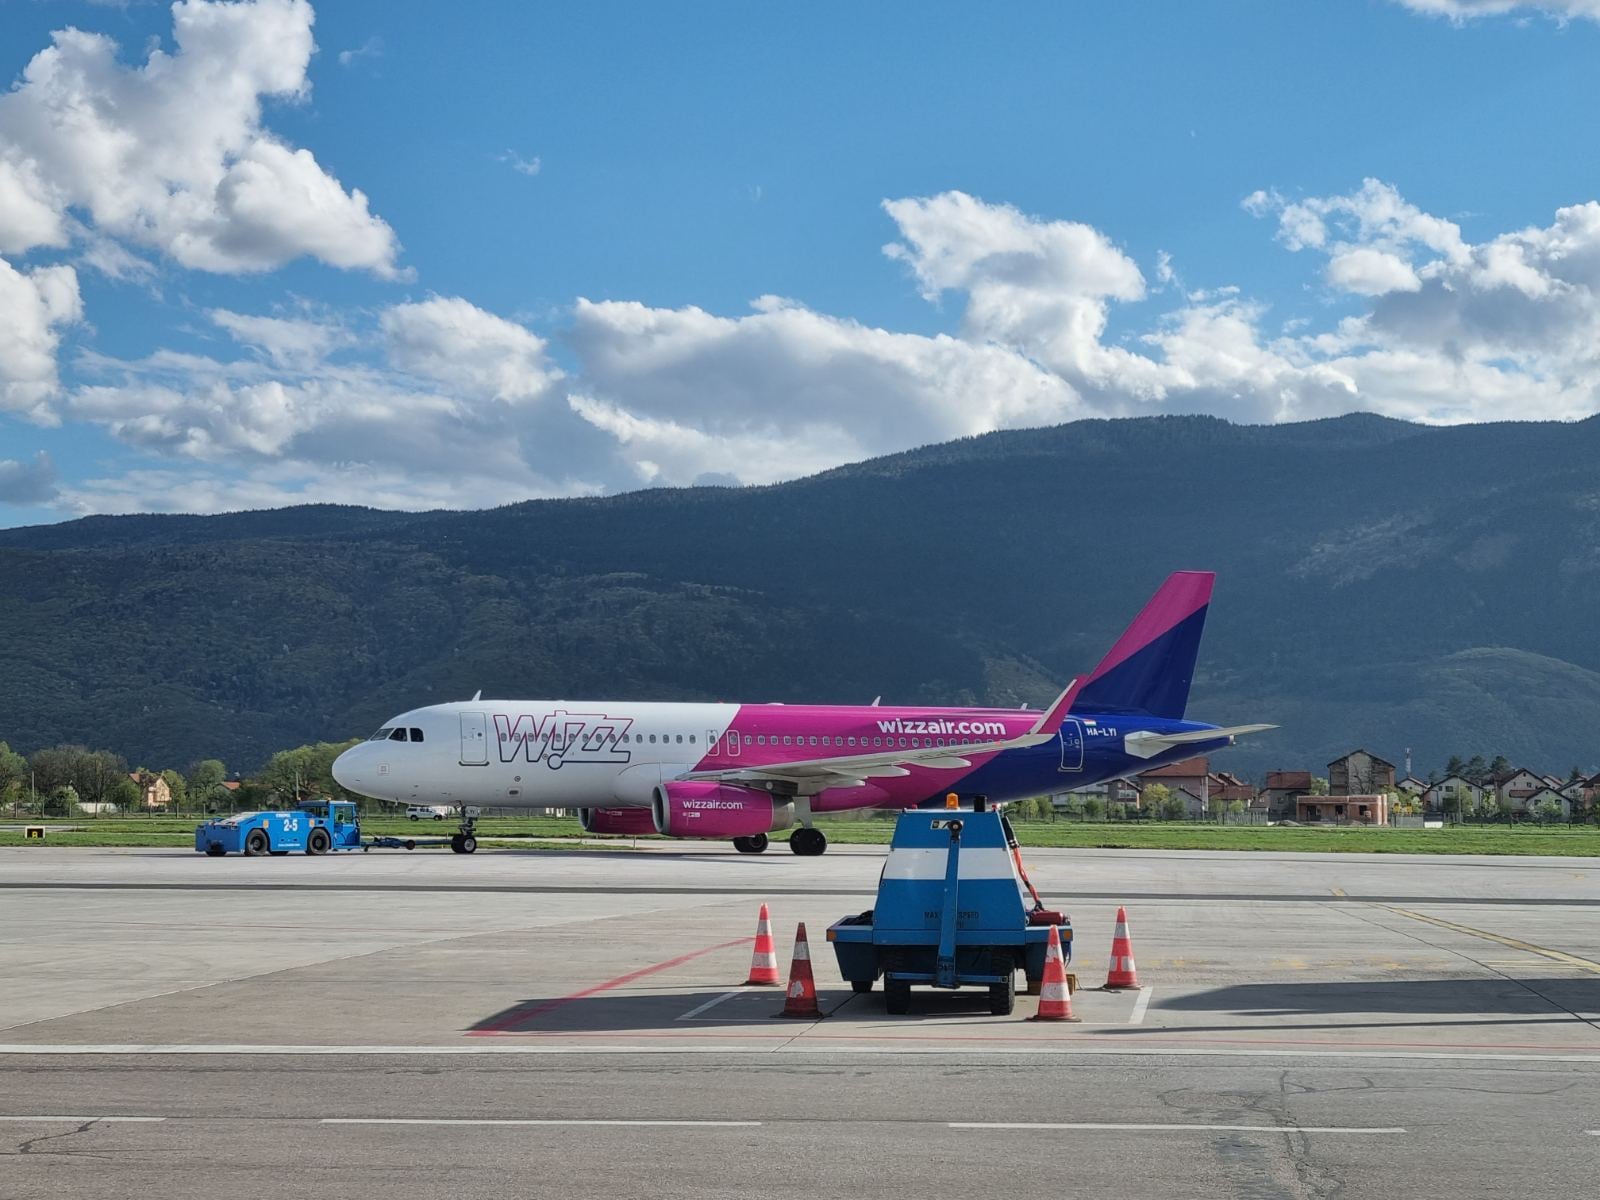 Niskobudžetna aviokompanija Wizz Air zatvara bazu u Sarajevu